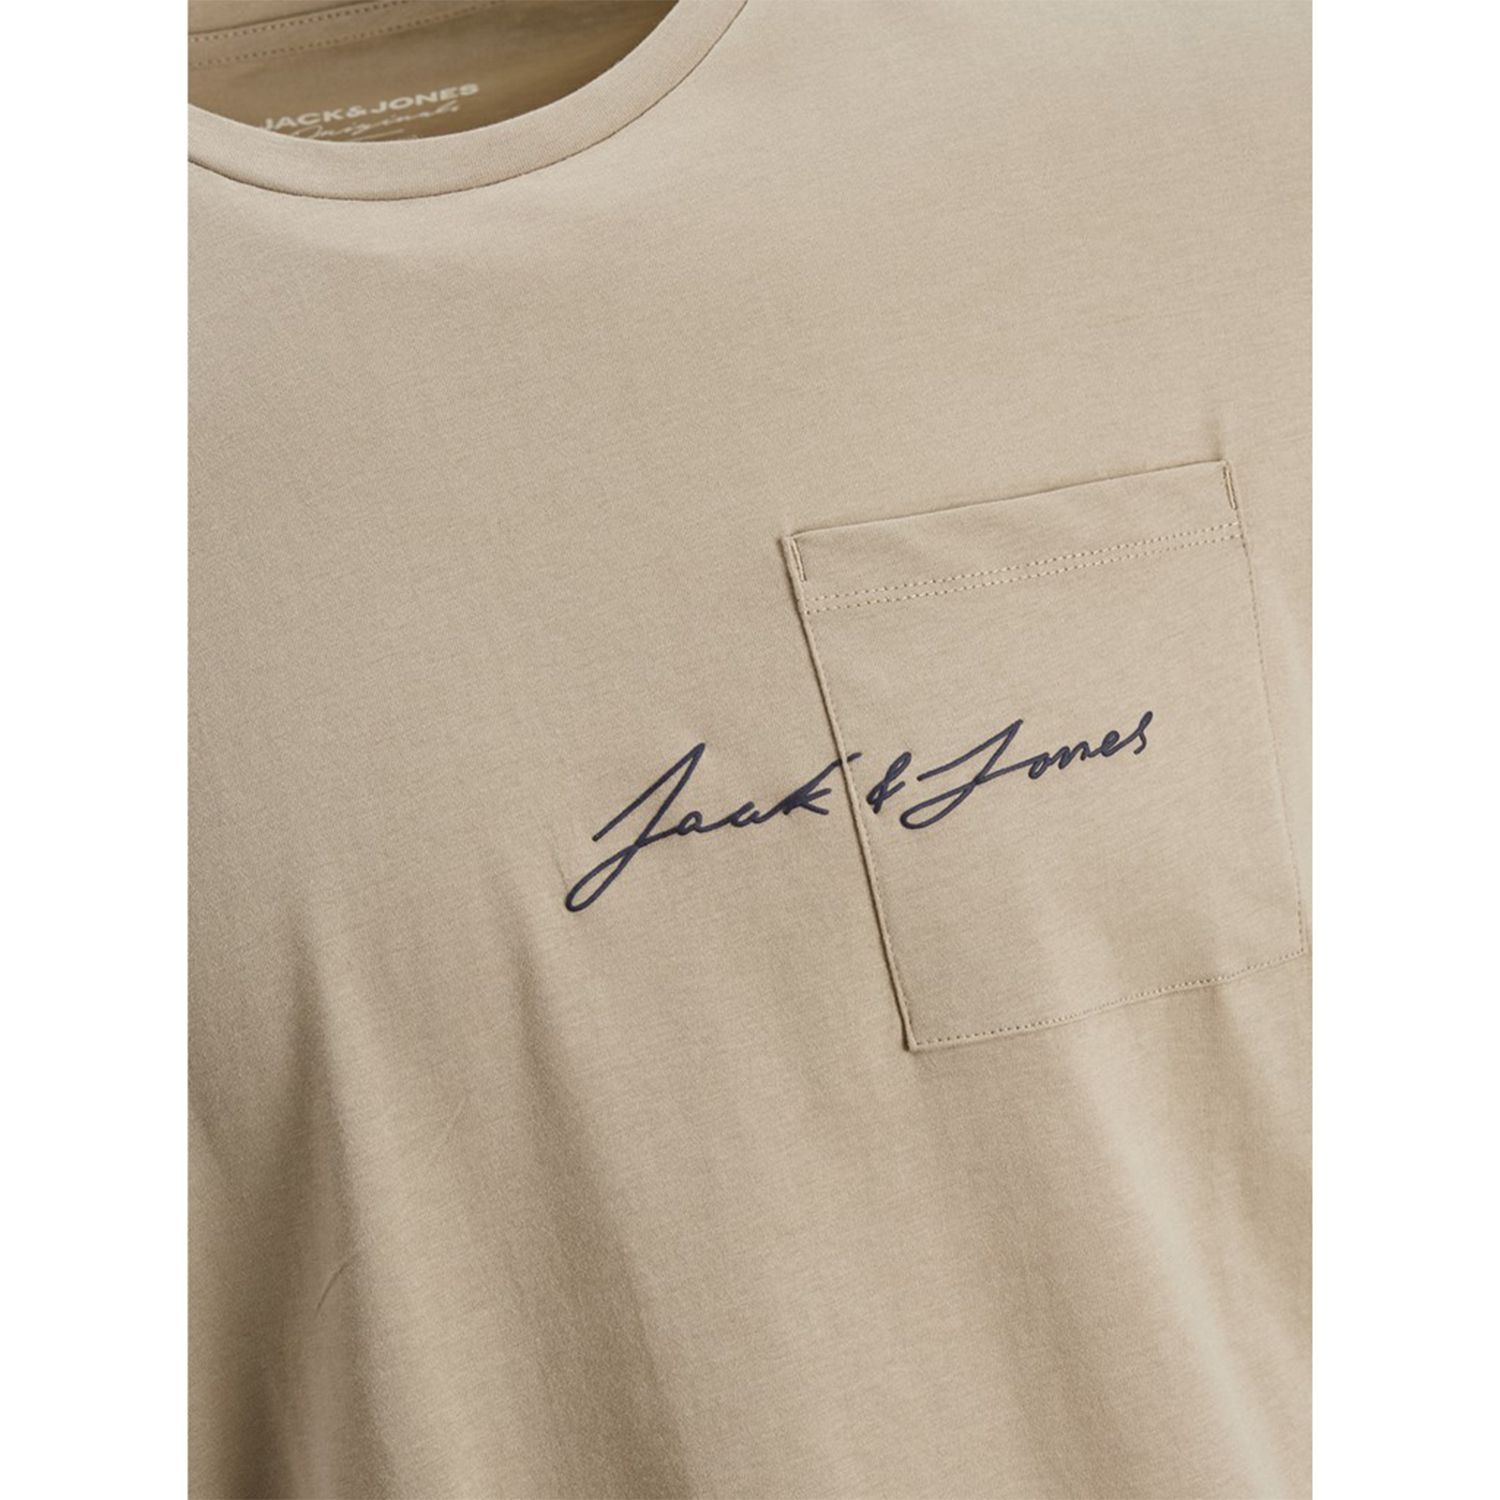 تی شرت آستین کوتاه مردانه جک اند جونز مدل ساده جیب دار کد Olympus12180662 رنگ کرم -  - 2